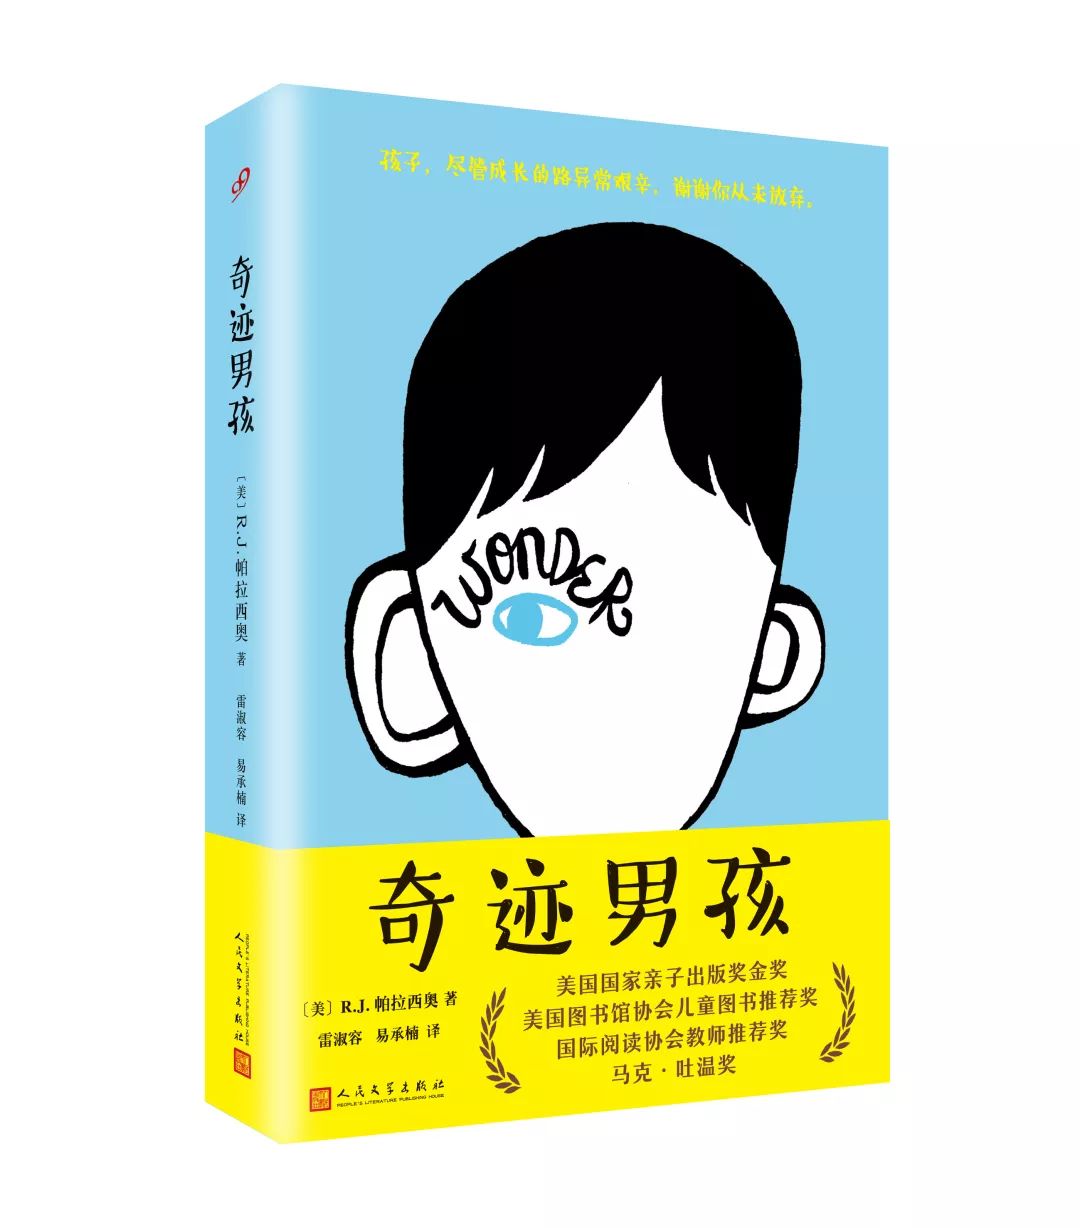 2018年度上海书展99读书人重点图书推荐